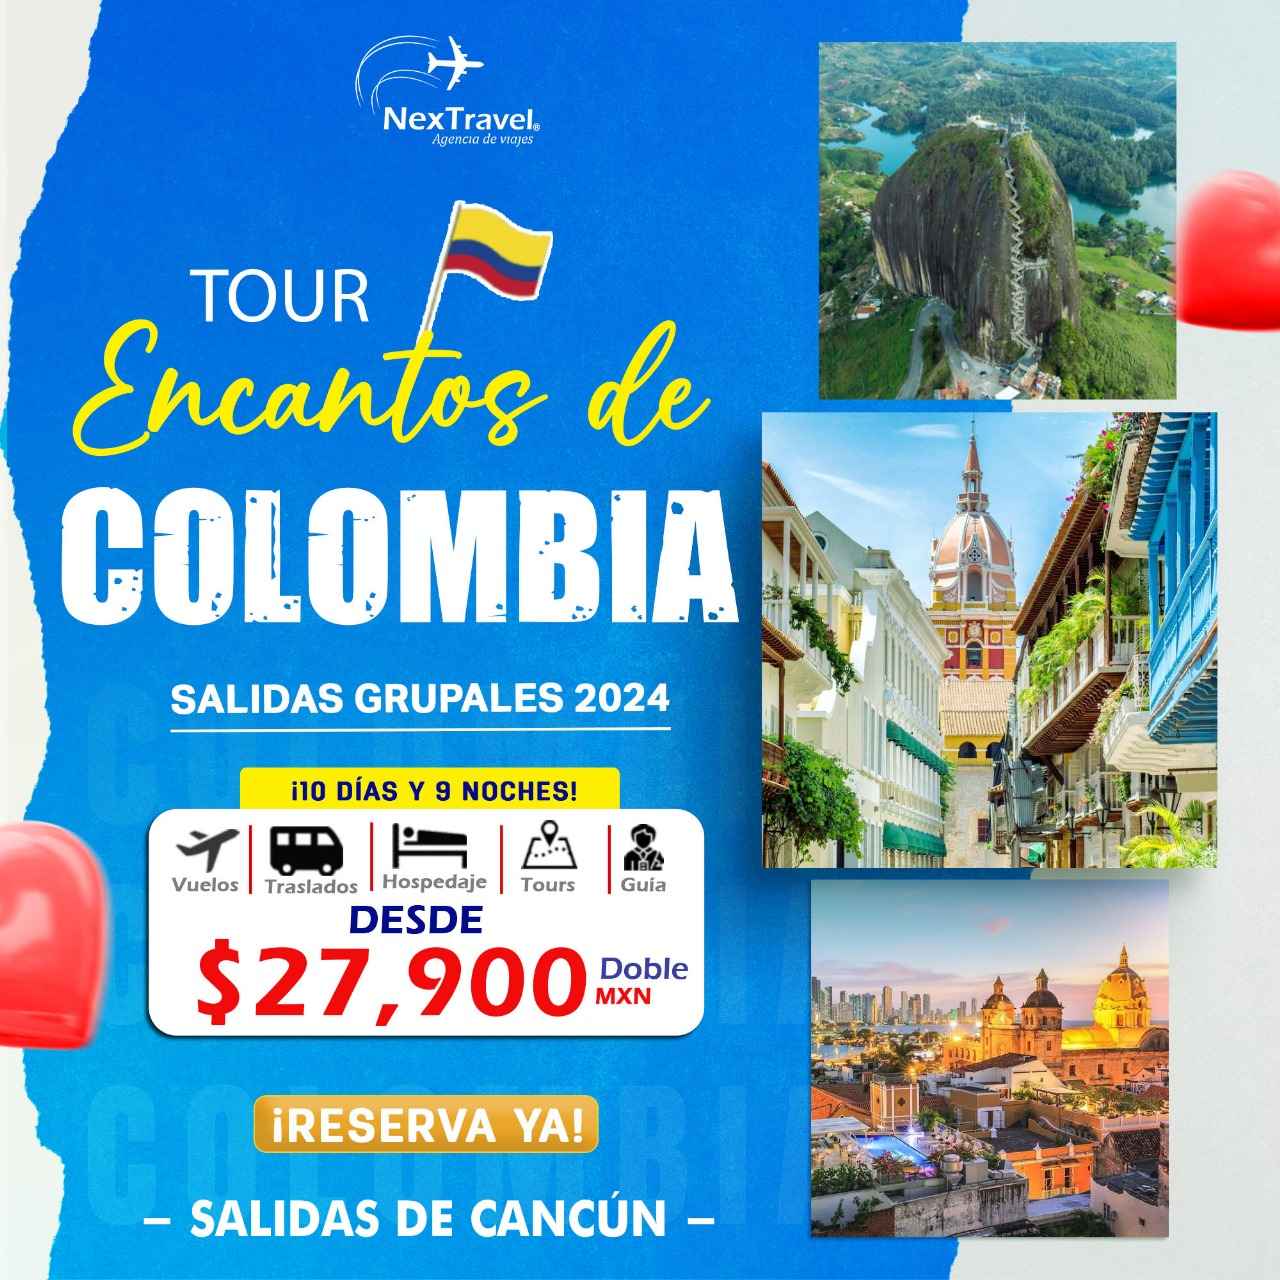 ¡ENCANTOS DE COLOMBIA 2024!